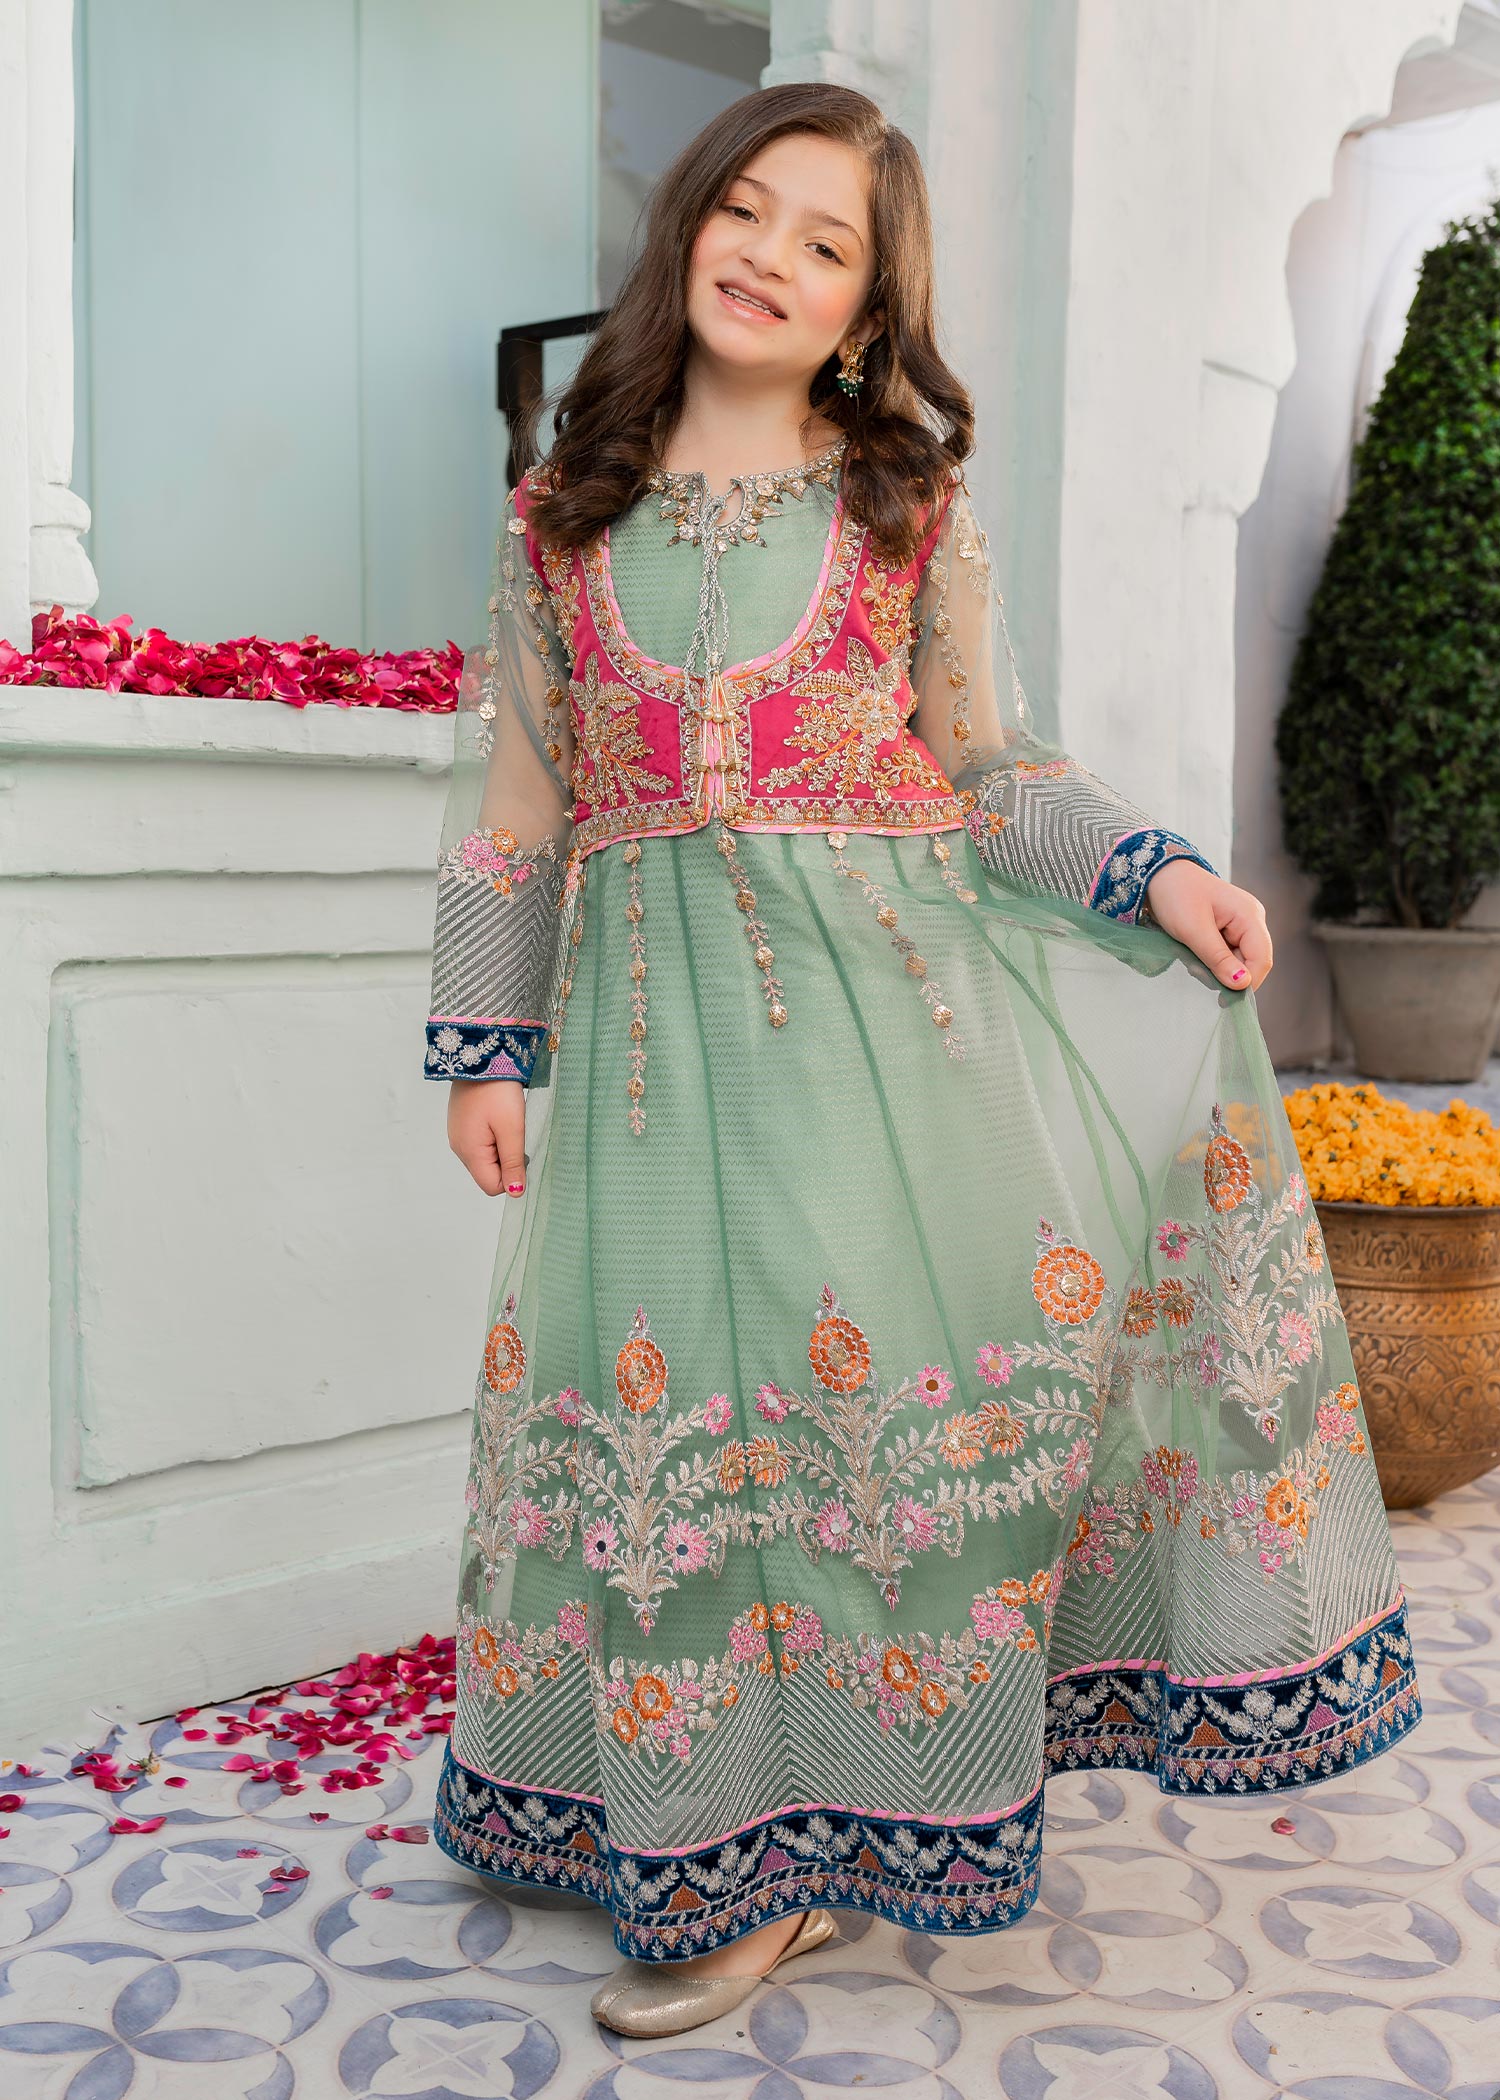 Pakistani Indian Kids Dress Little Girls Eid Wear | eBay